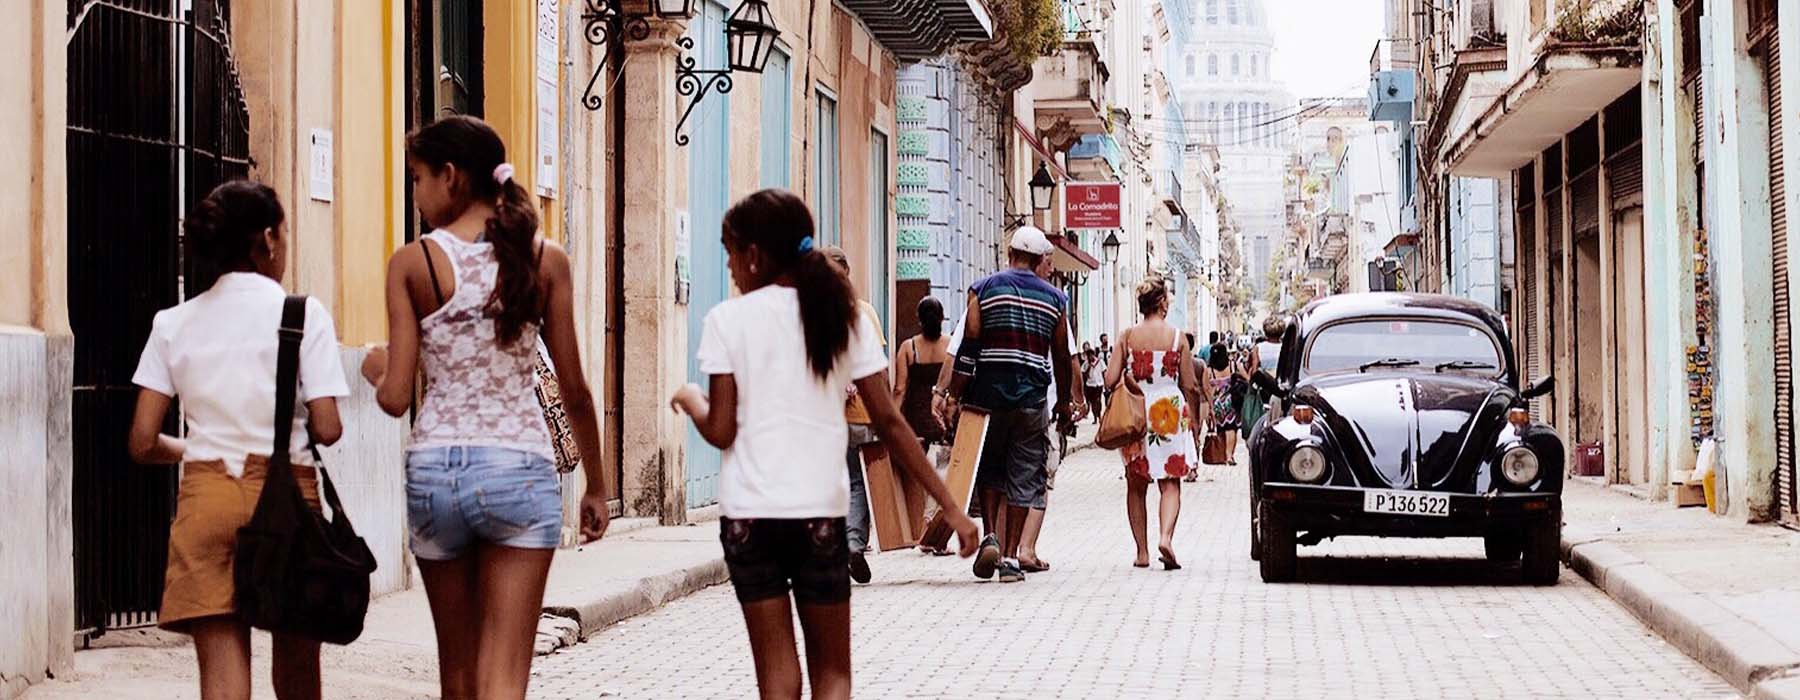 All our Cuba<br class="hidden-md hidden-lg" /> Cultural Holidays